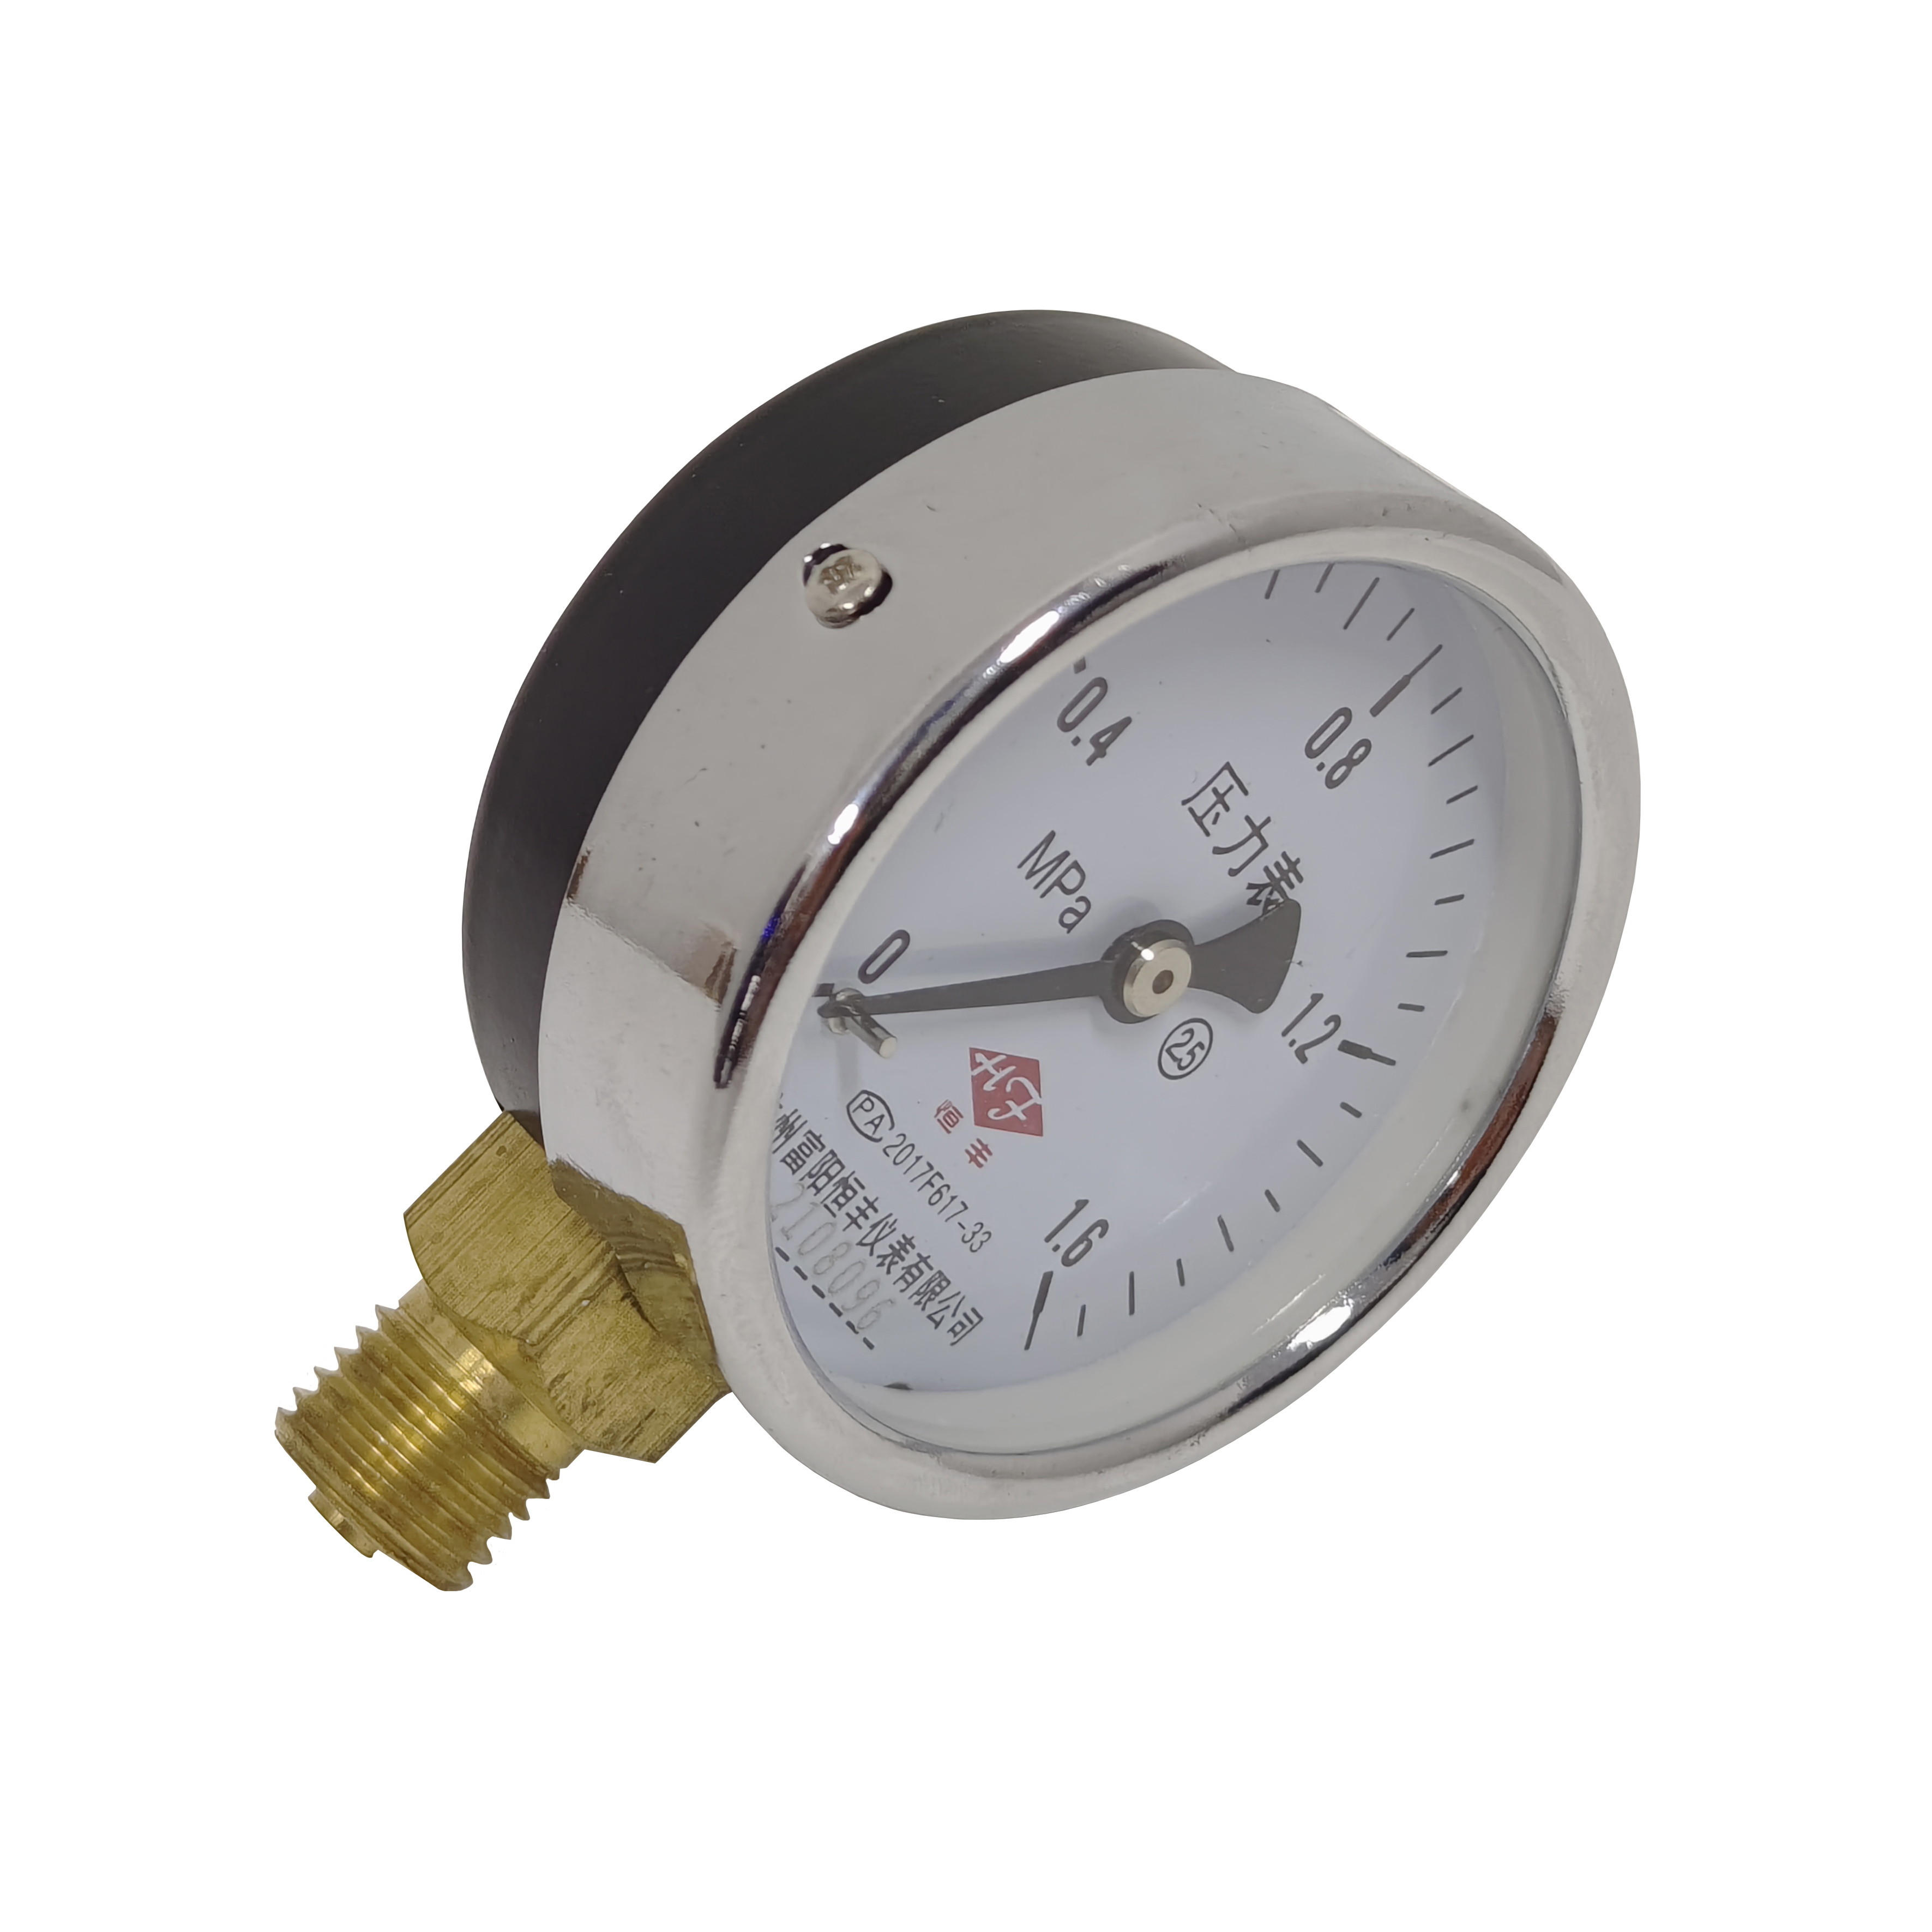 Y60 ordinary pressure gauge